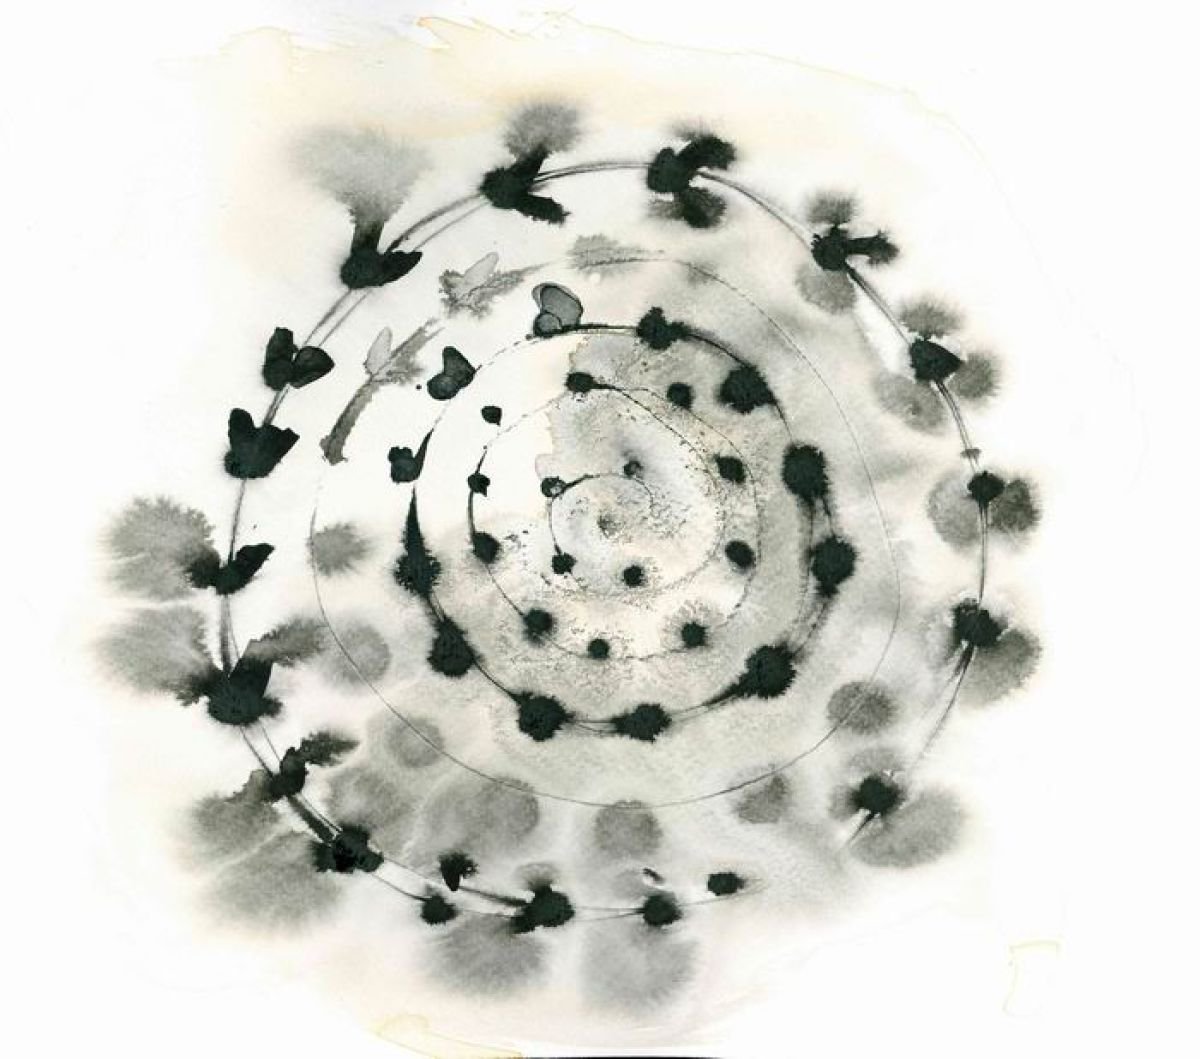 Abstract Mandala Painting B&W by Ewa Dabkiewicz